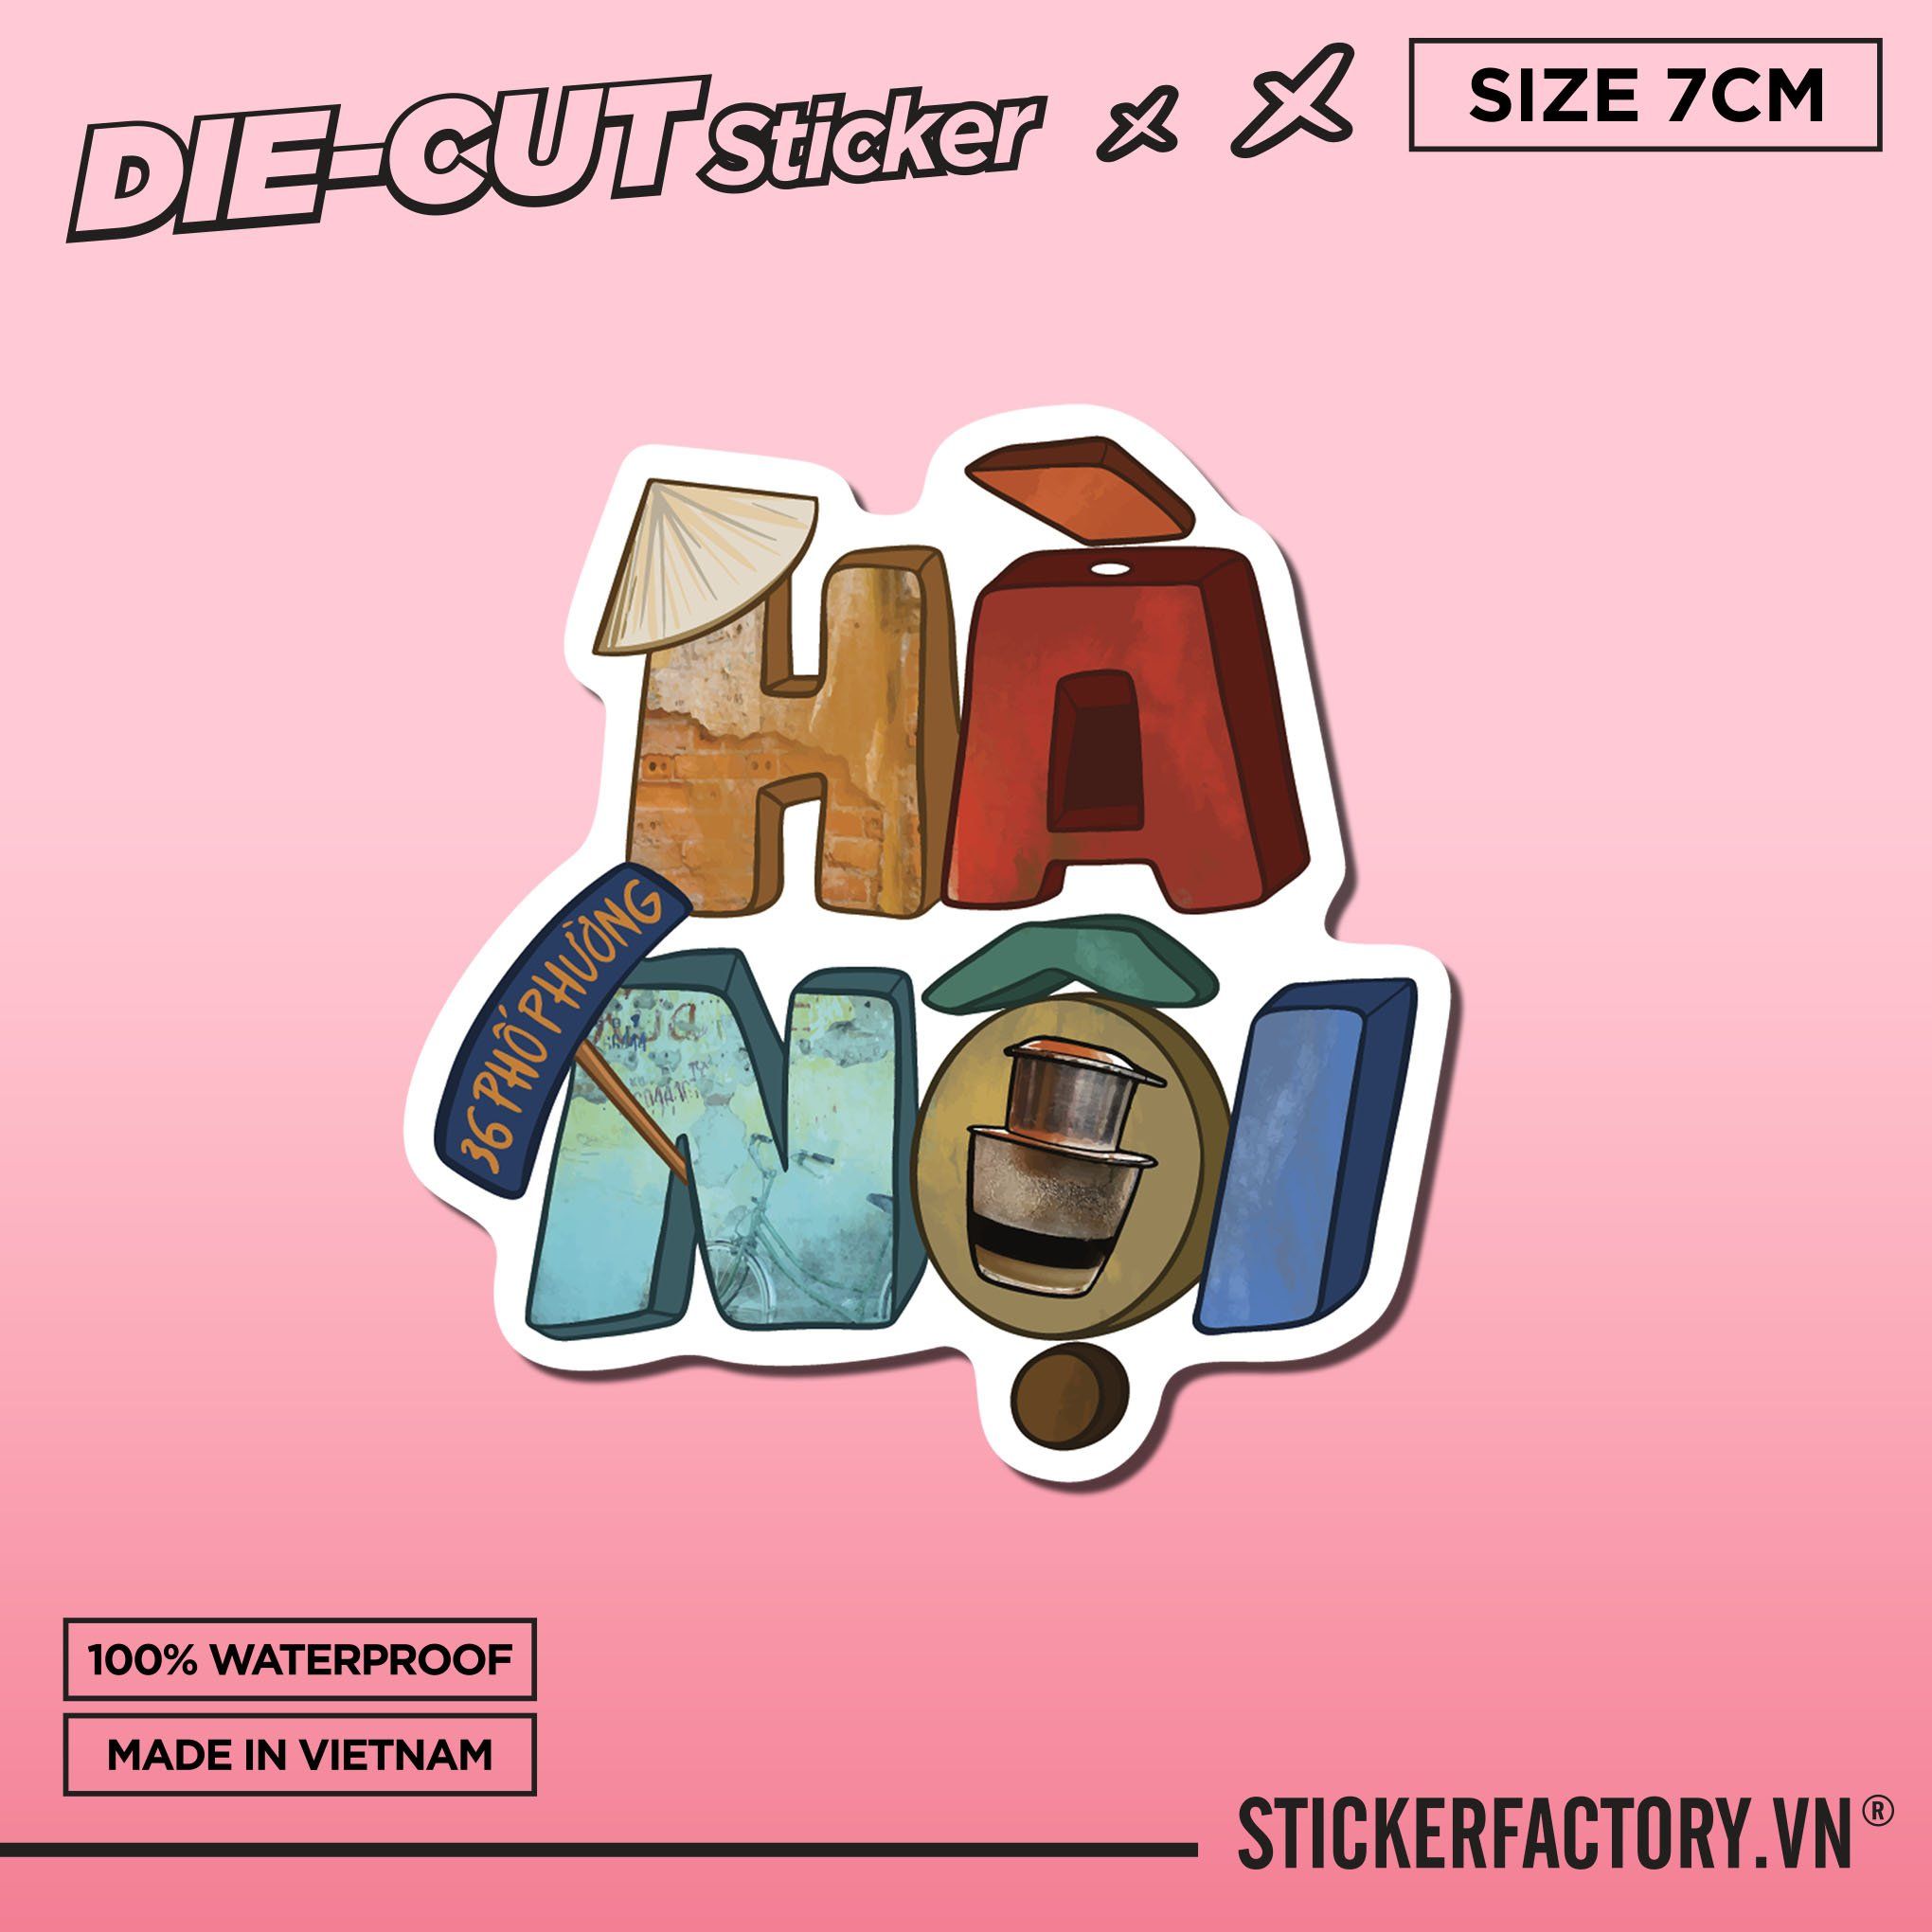 HÀ NỘI - Sticker Die-cut hình dán cắt rời